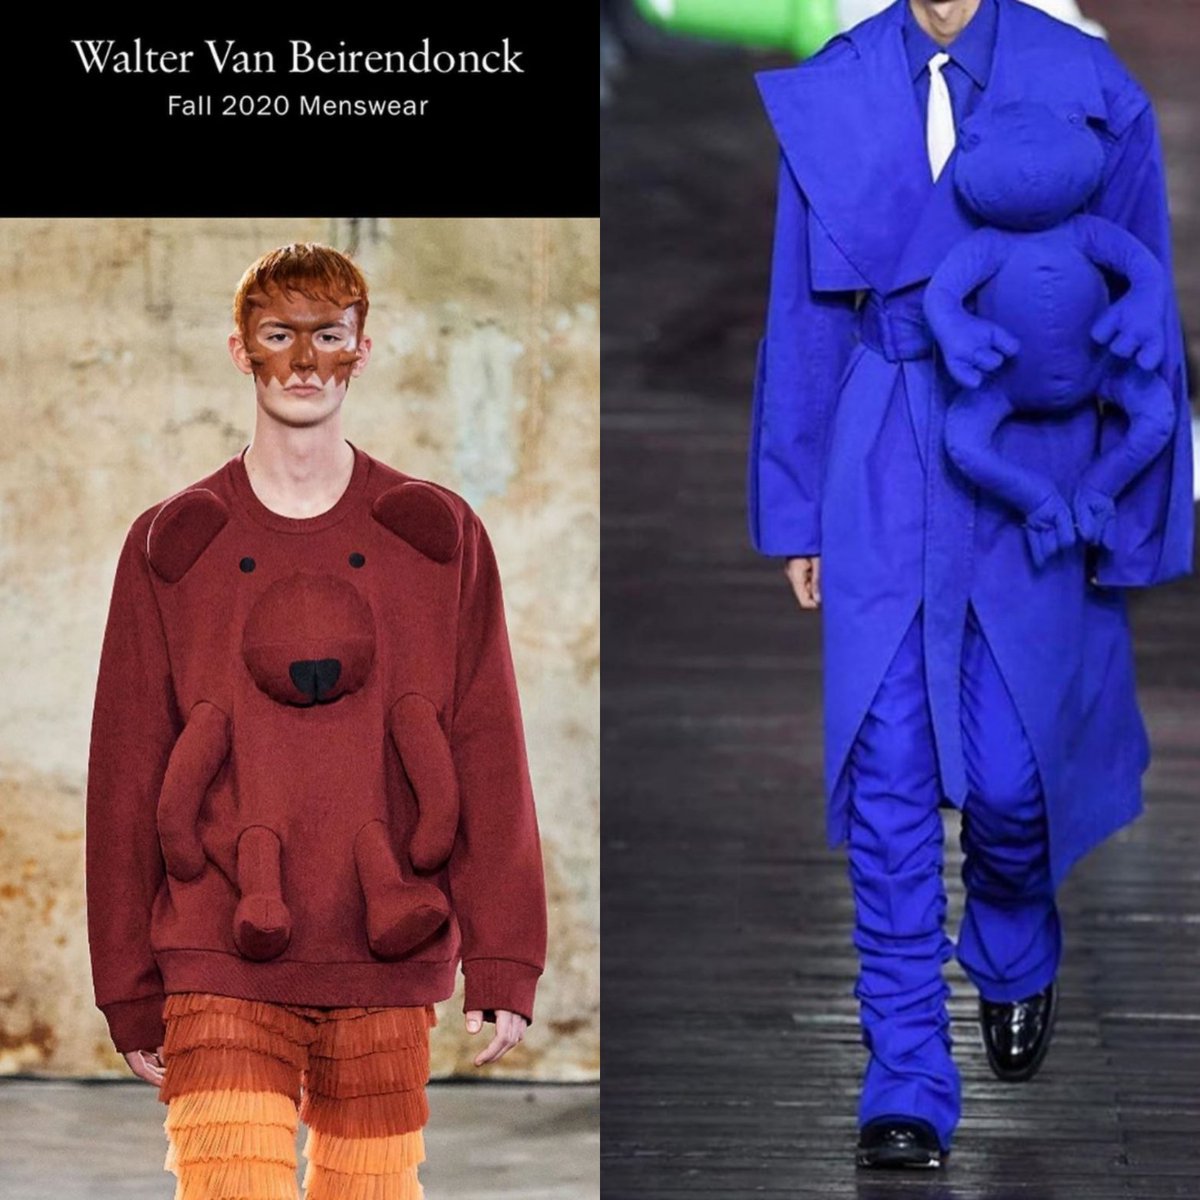 Walter Van Beirendonck Calls Out Louis Vuitton, Virgil Abloh